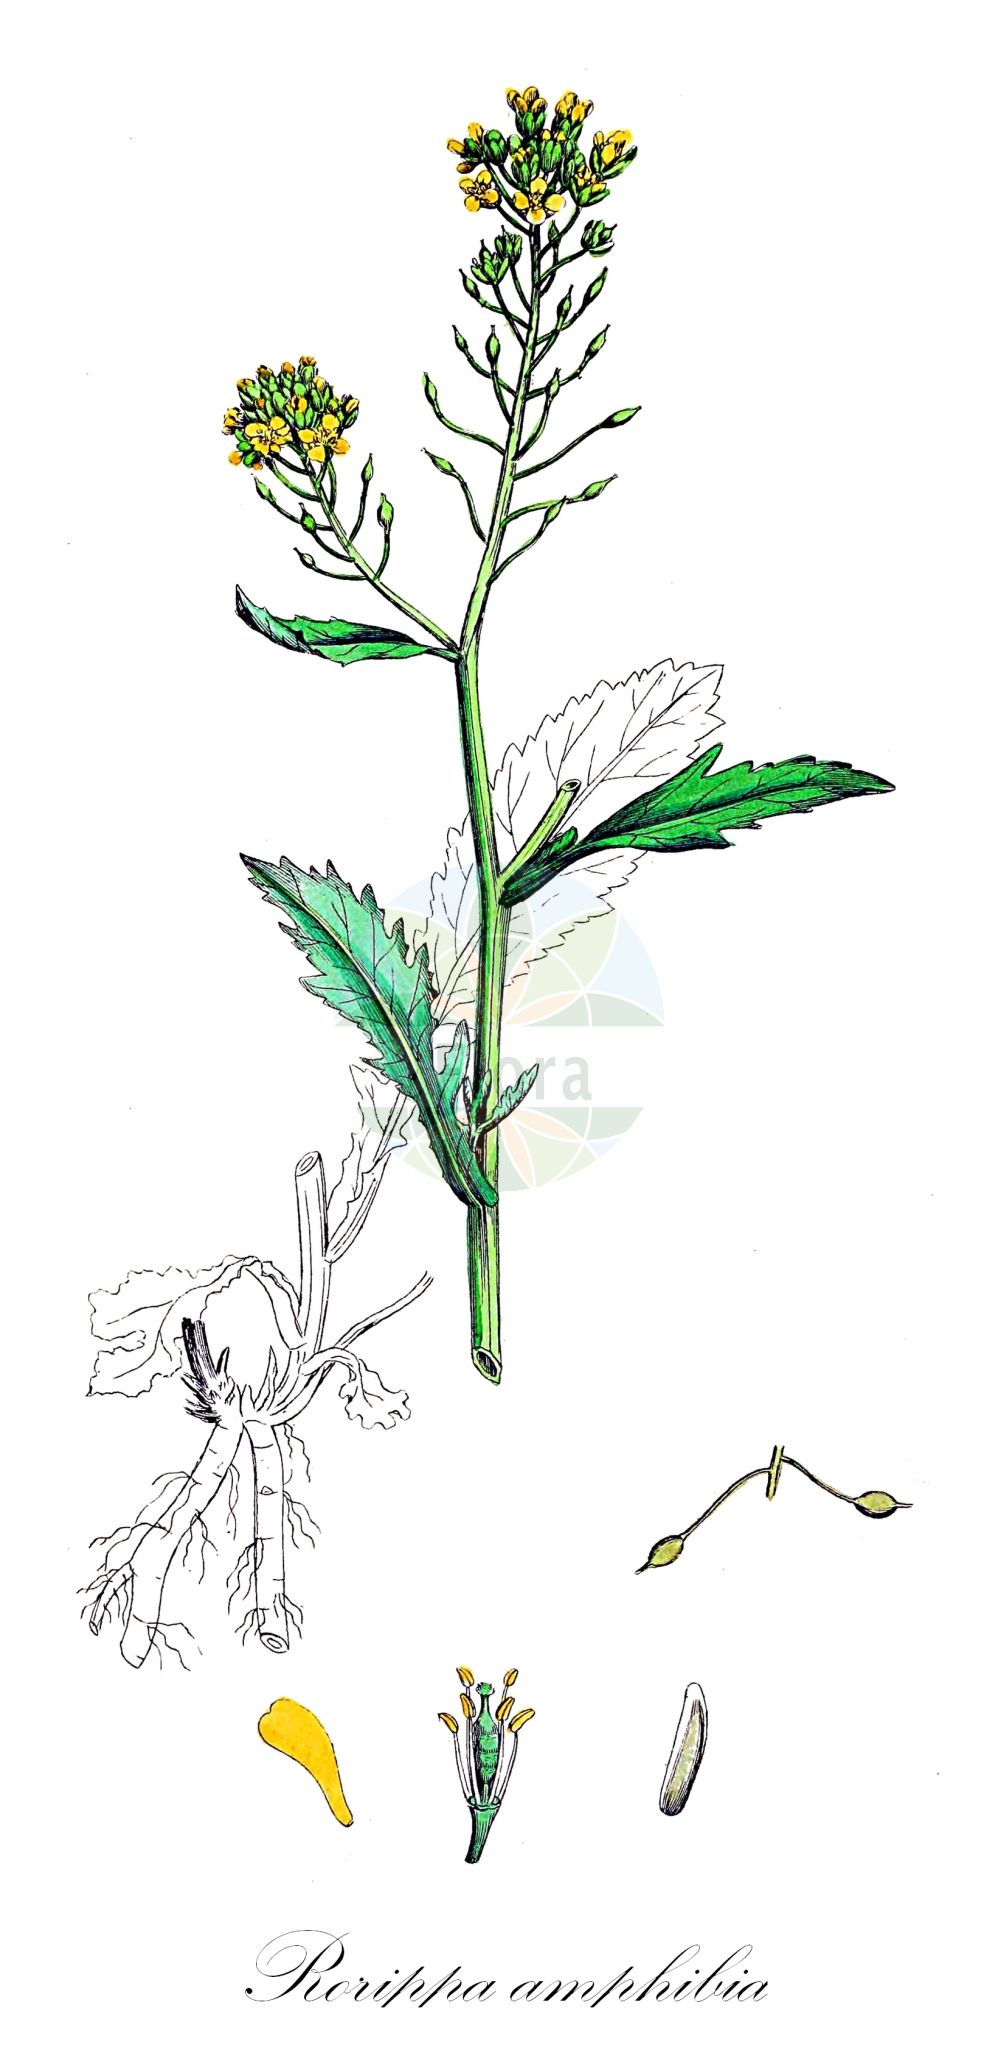 Historische Abbildung von Rorippa amphibia (Wasser-Sumpfkresse - Great Yellow-cress). Das Bild zeigt Blatt, Bluete, Frucht und Same. ---- Historical Drawing of Rorippa amphibia (Wasser-Sumpfkresse - Great Yellow-cress). The image is showing leaf, flower, fruit and seed.(Rorippa amphibia,Wasser-Sumpfkresse,Great Yellow-cress,Brachiolobos amphibius,Brachiolobus amphibius,Nasturtium amphibium,Nasturtium fluviatile,Radicula amphibia,Rorippa amphibia,Sisymbrium amphibium,Sisymbrium stoloniferum,Wasser-Sumpfkresse,Ufer-Sumpfkresse,Great Yellow-cress,Rorippa,Sumpfkresse,Yellowcress,Brassicaceae,Kreuzblütler,Cabbage family,Blatt,Bluete,Frucht,Same,leaf,flower,fruit,seed,Sowerby (1790-1813))